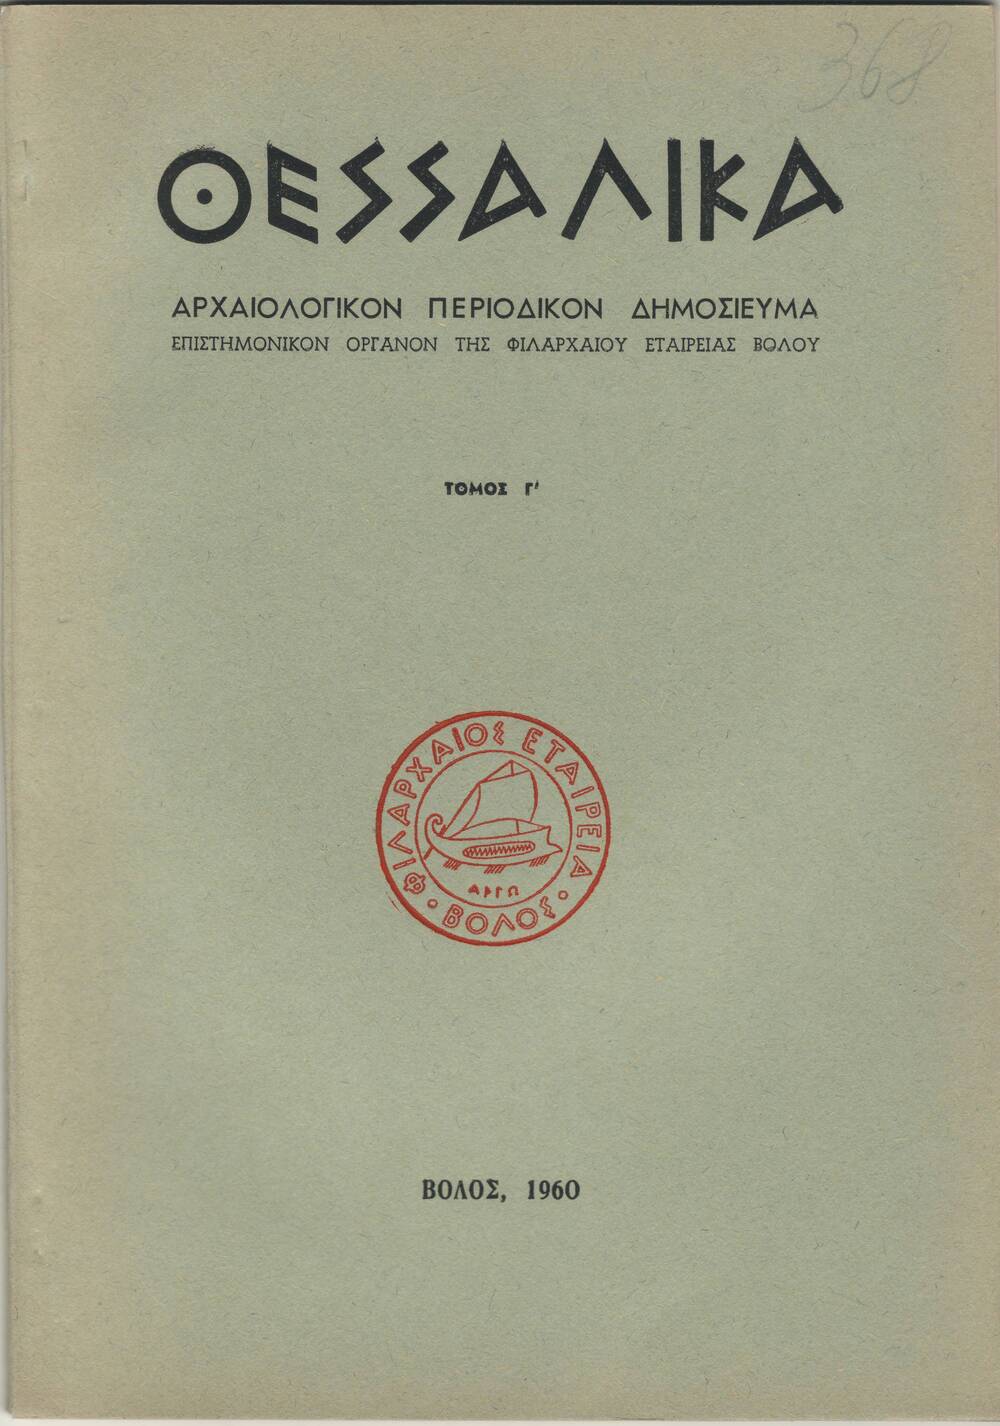 Журнал археологический на греческом языке, 1960 г.